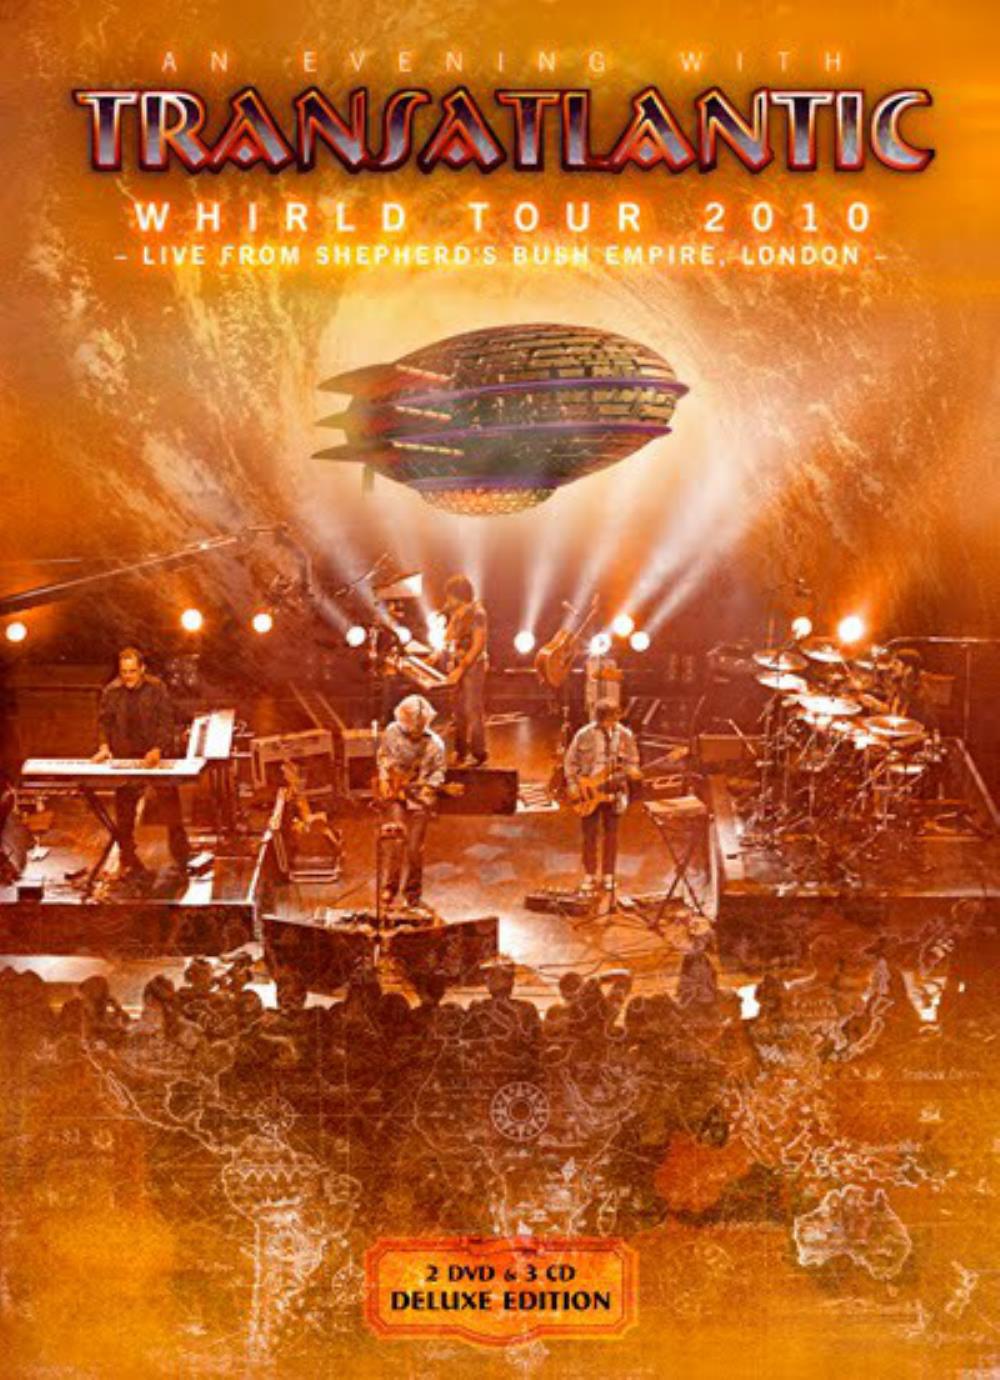 Transatlantic - Whirld Tour 2010 - Live from Shepherd's Bush Empire, London CD (album) cover